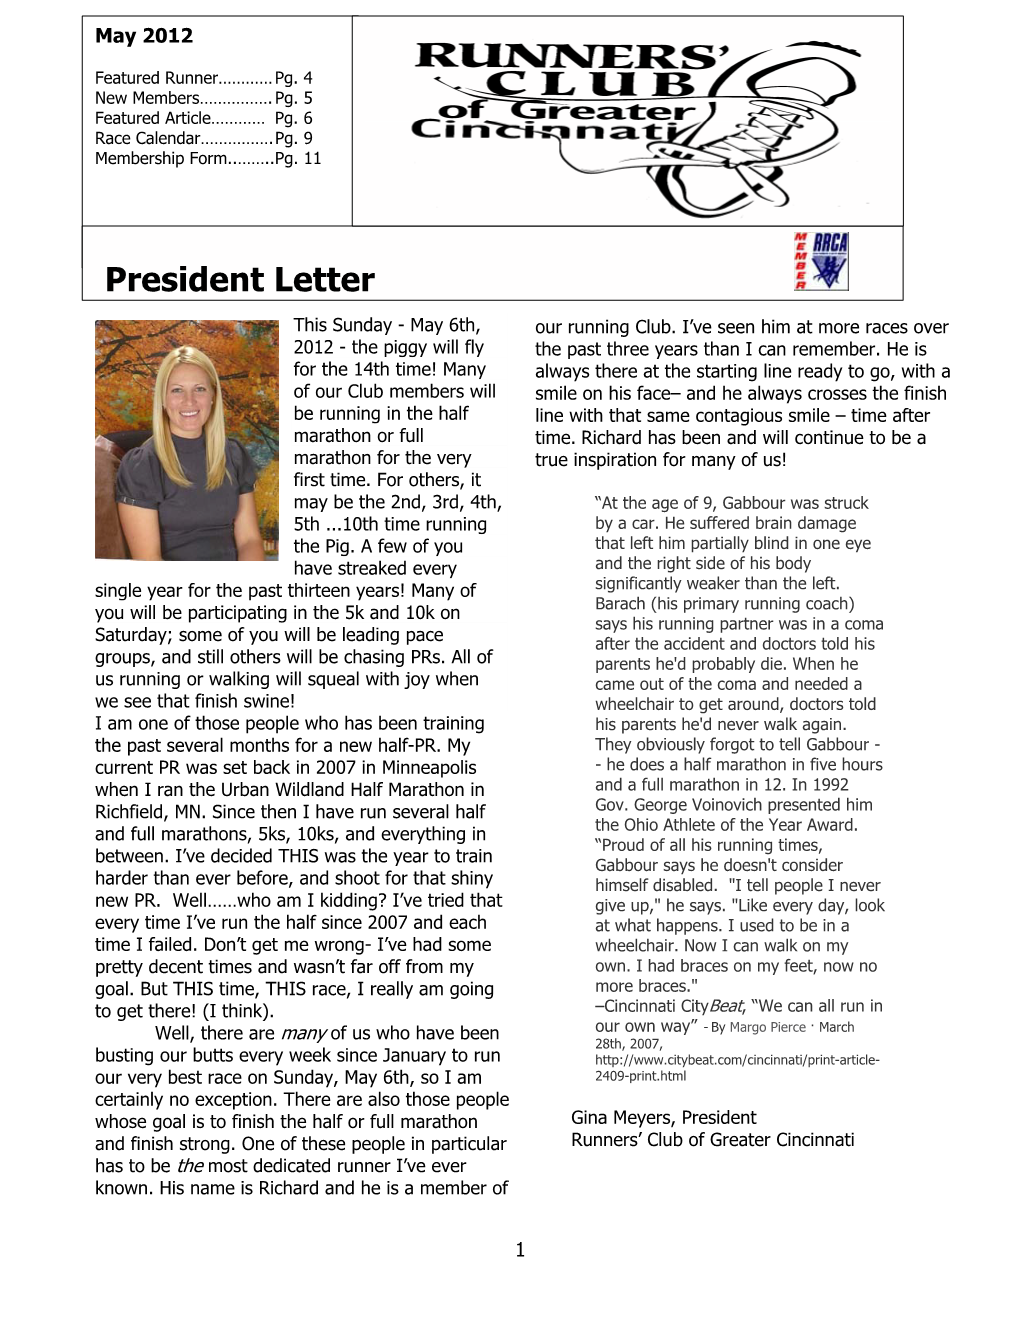 President Letter